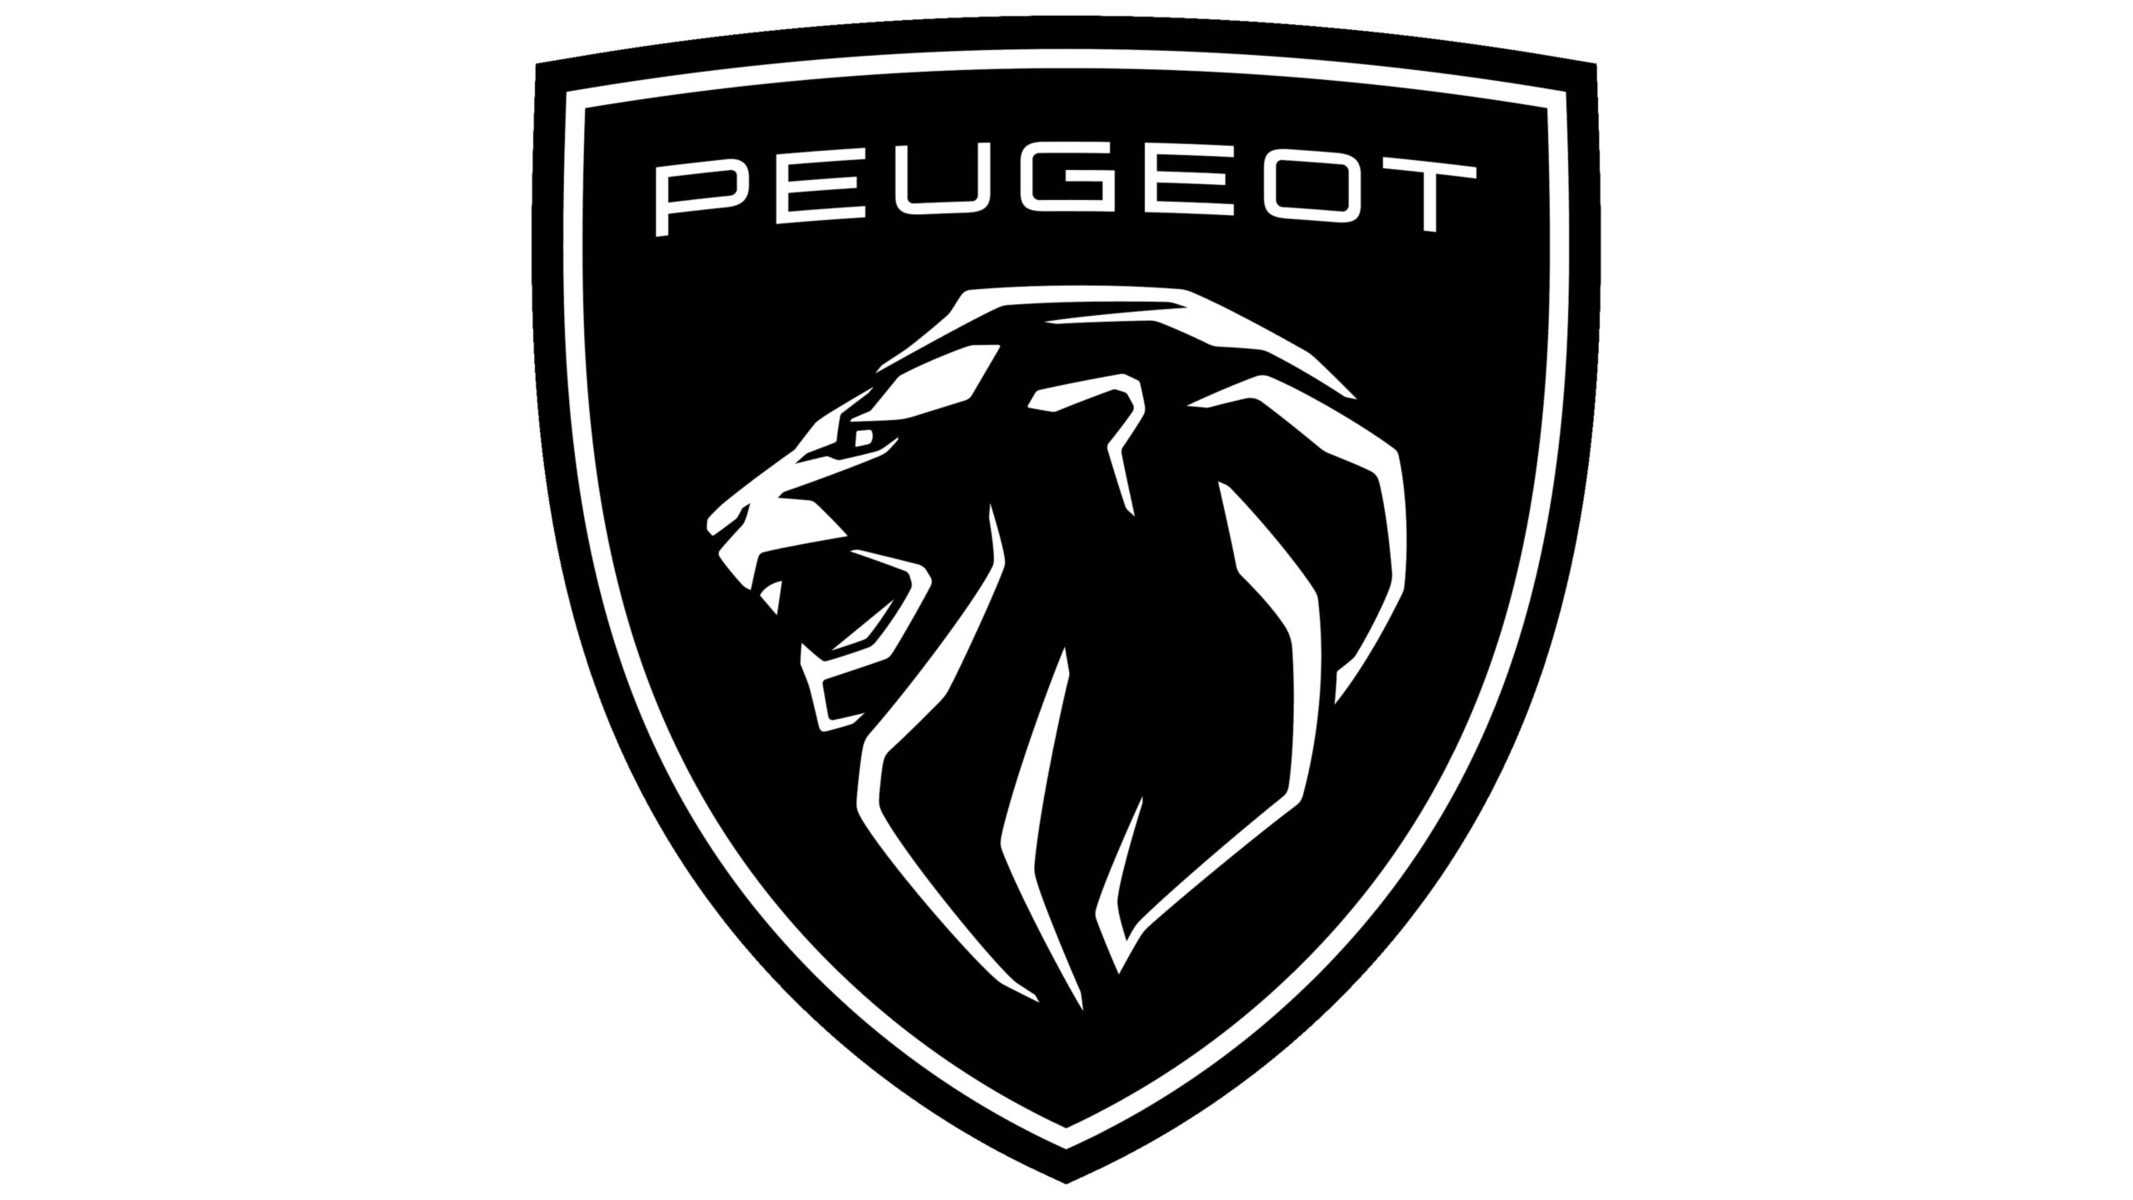 Peugeot new logo